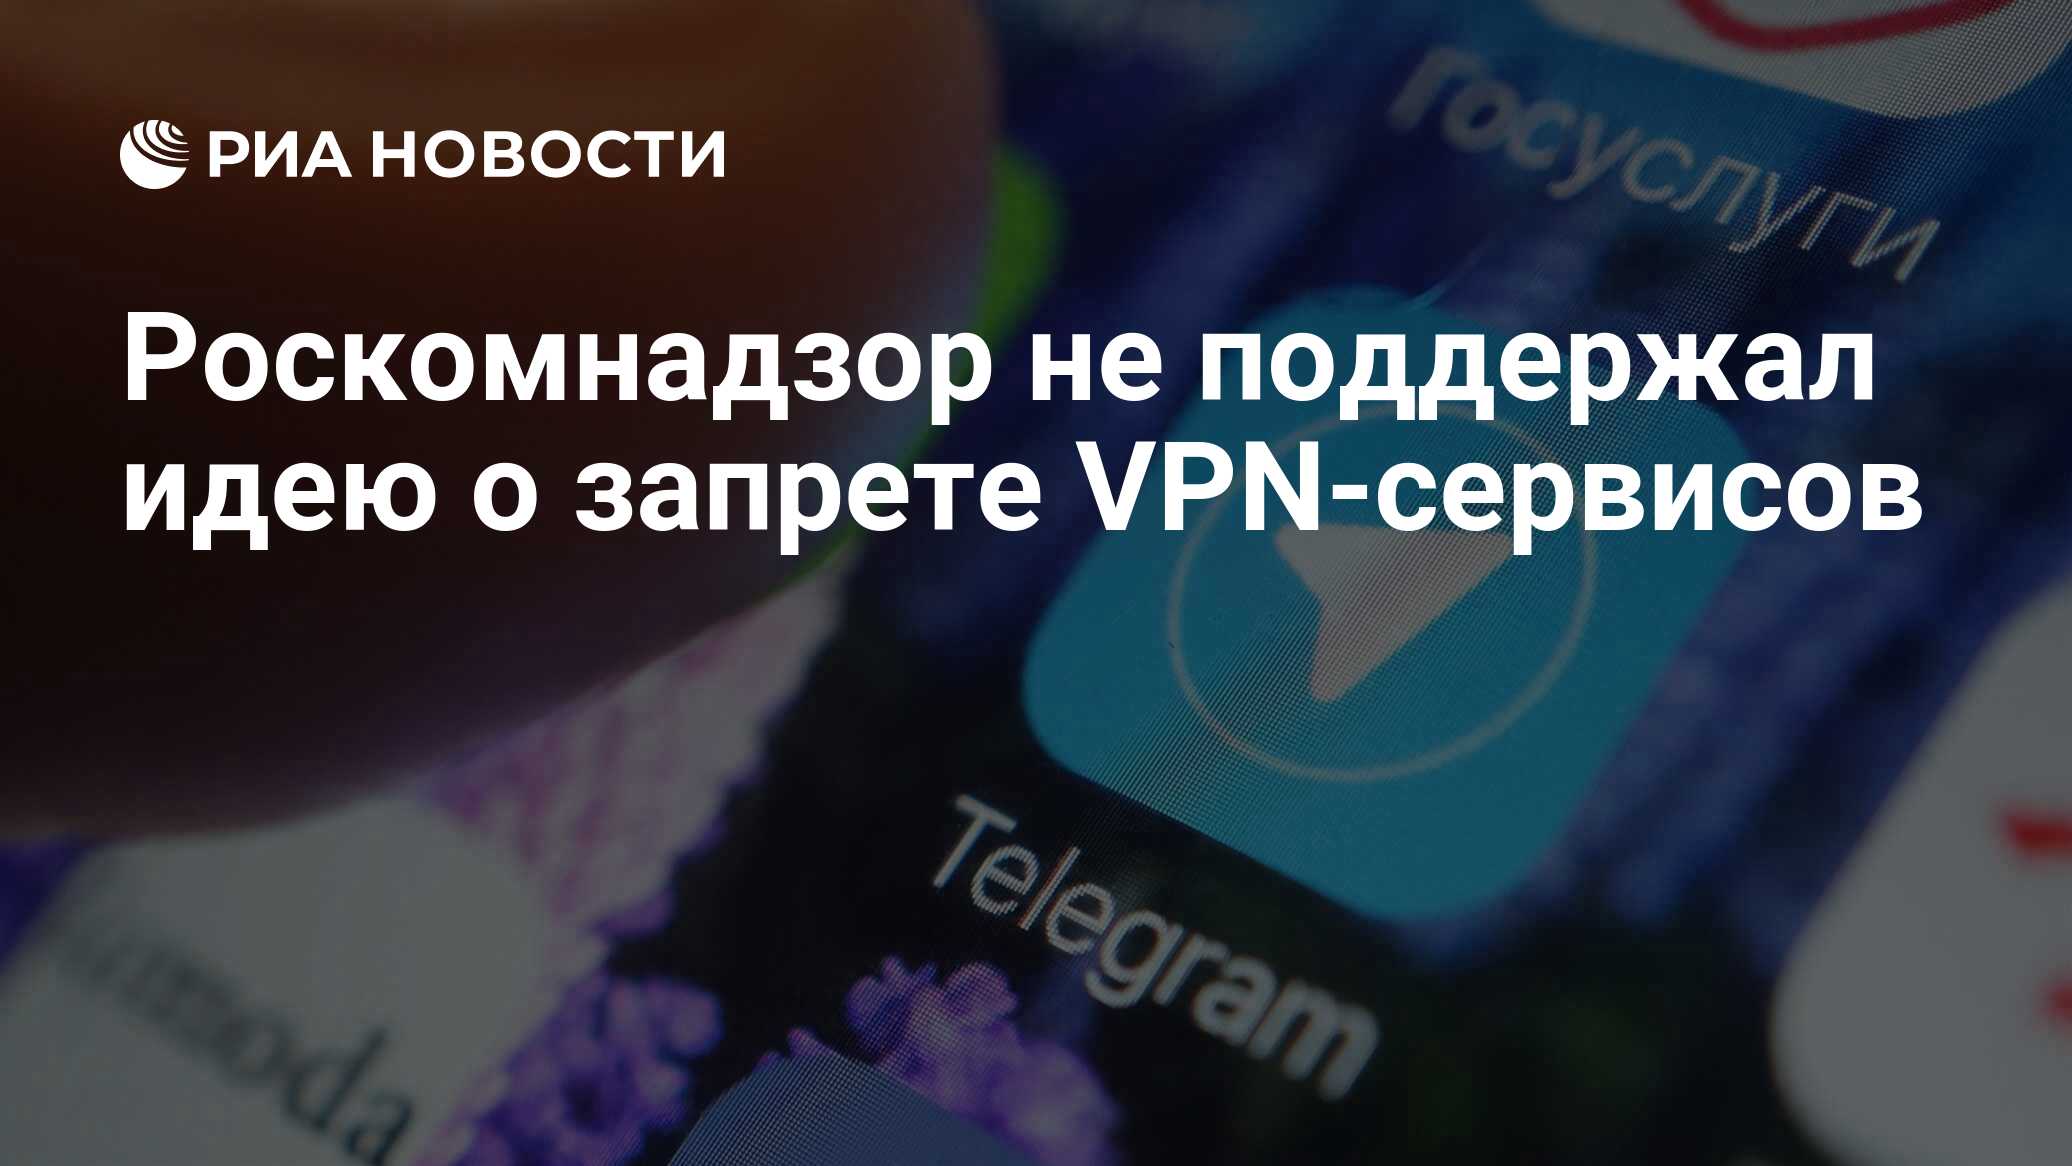 Запрет vpn в россии новости